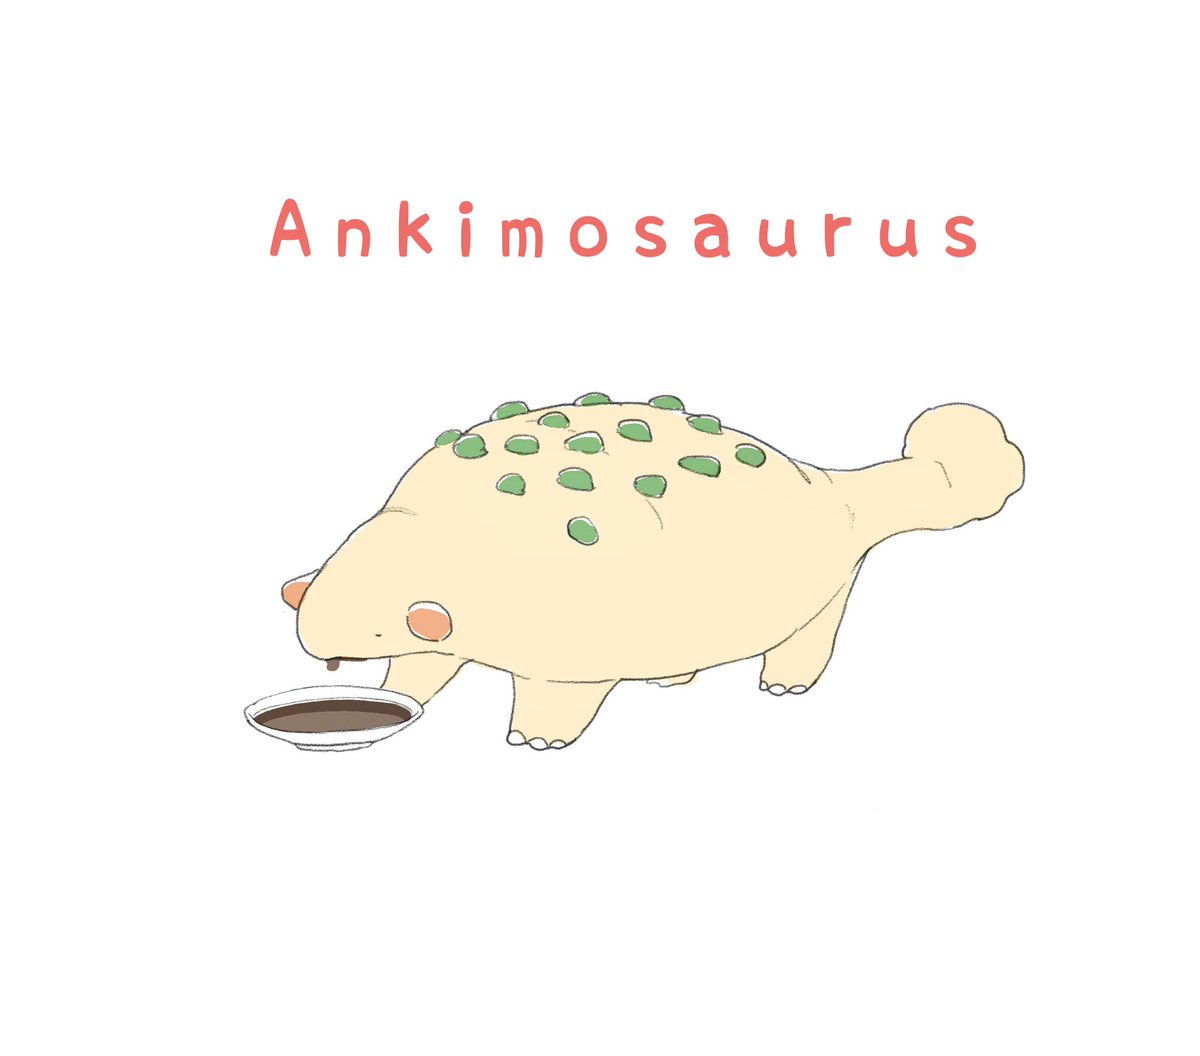 「アンキモザウルス 」|sano yuichiのイラスト